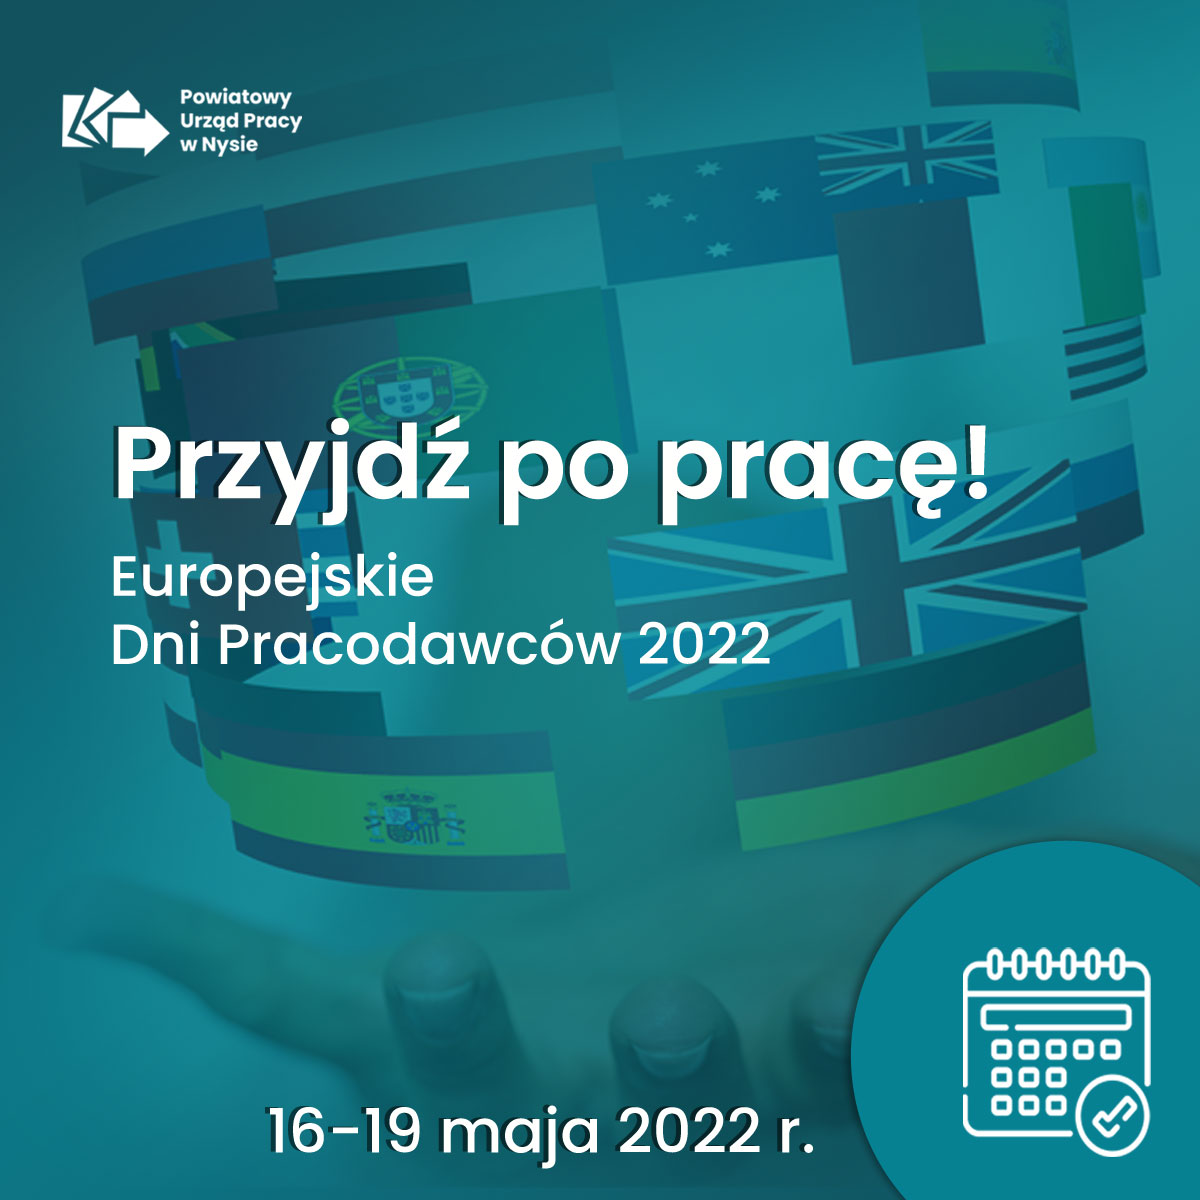 Europejskie Dni Pracodawców 2022 – Przyjdz po prac!